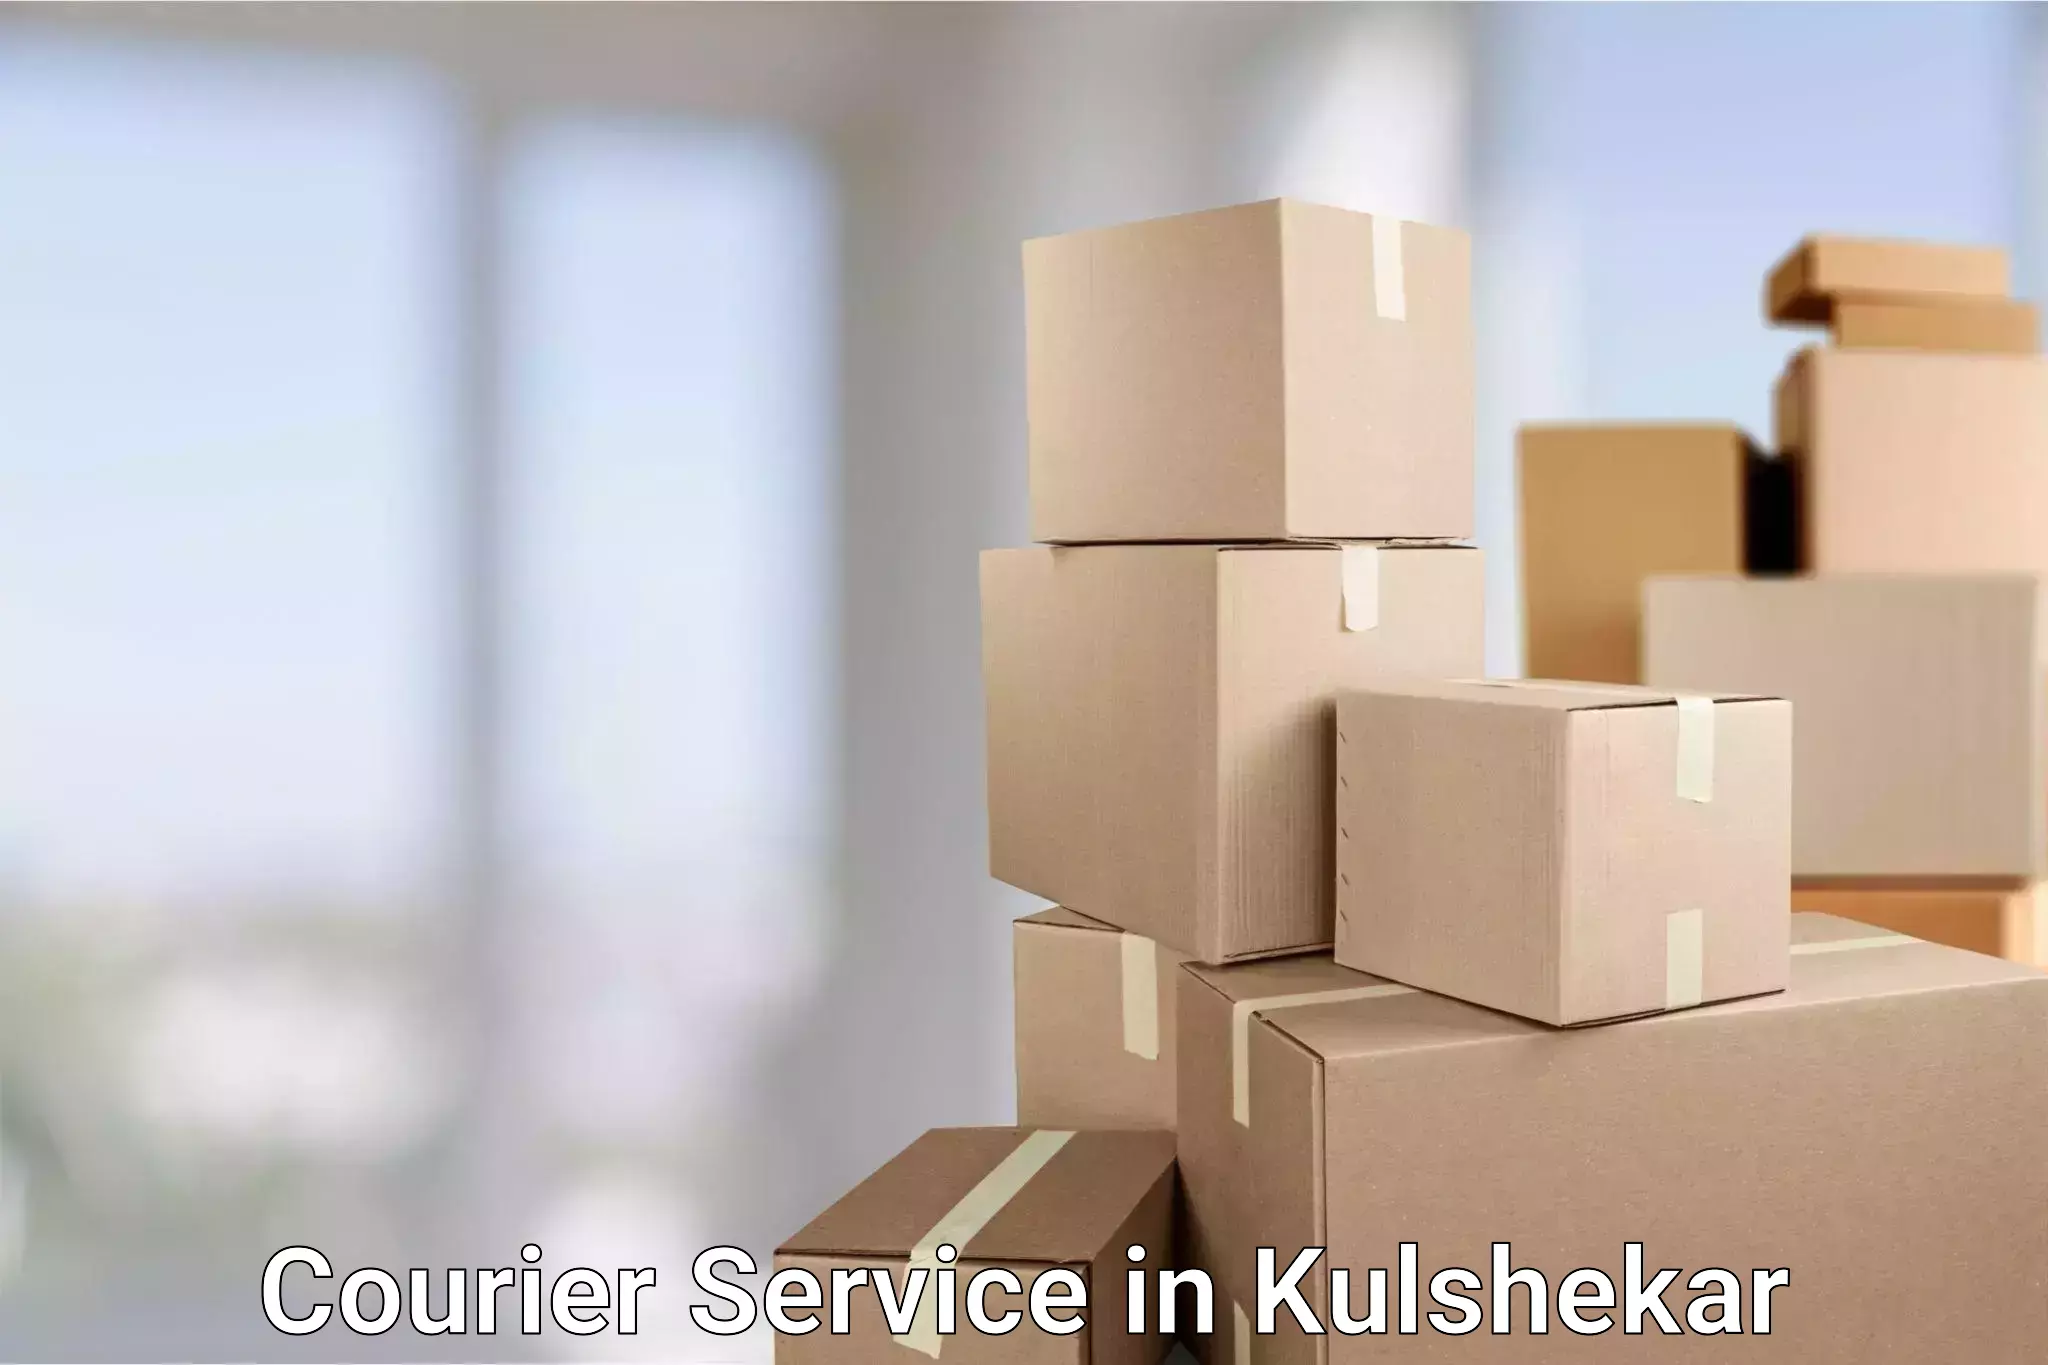 Package delivery network in Kulshekar